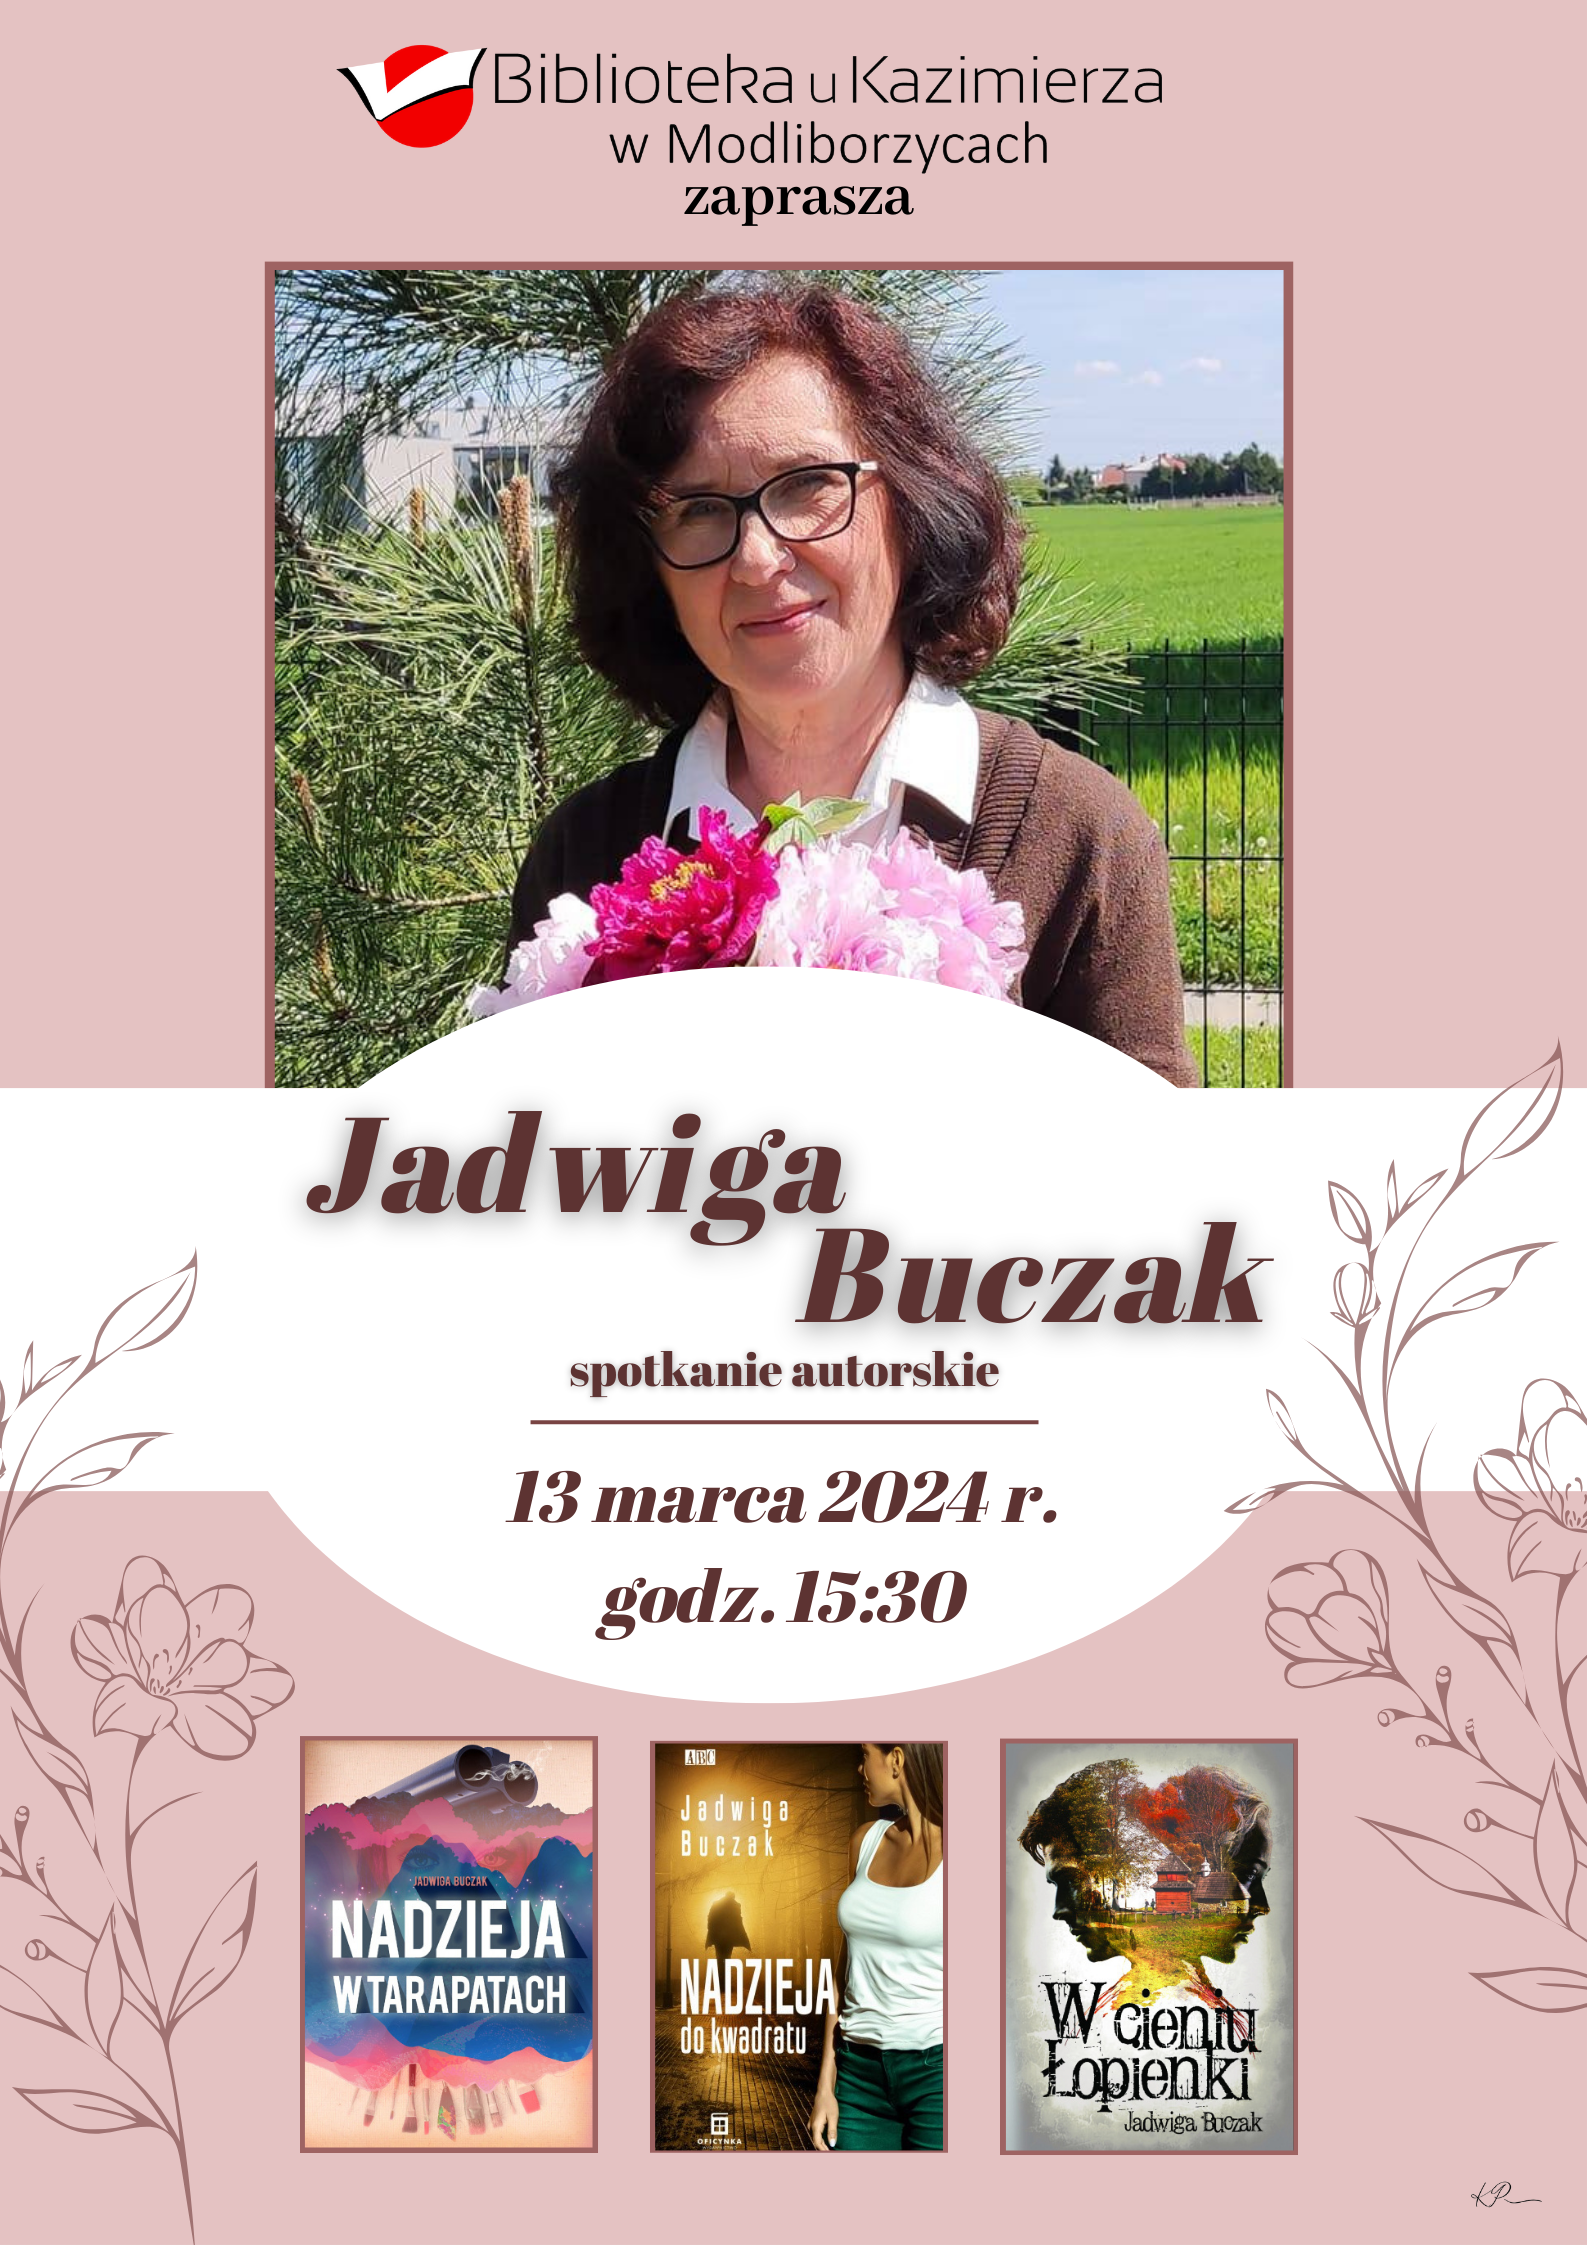 Biblioteka u Kazimierza w Modliborzycach  zaprasza na spotkanie autorskie z Jadwigą Buczak 13 marca 2024  r., godz. 15:30!